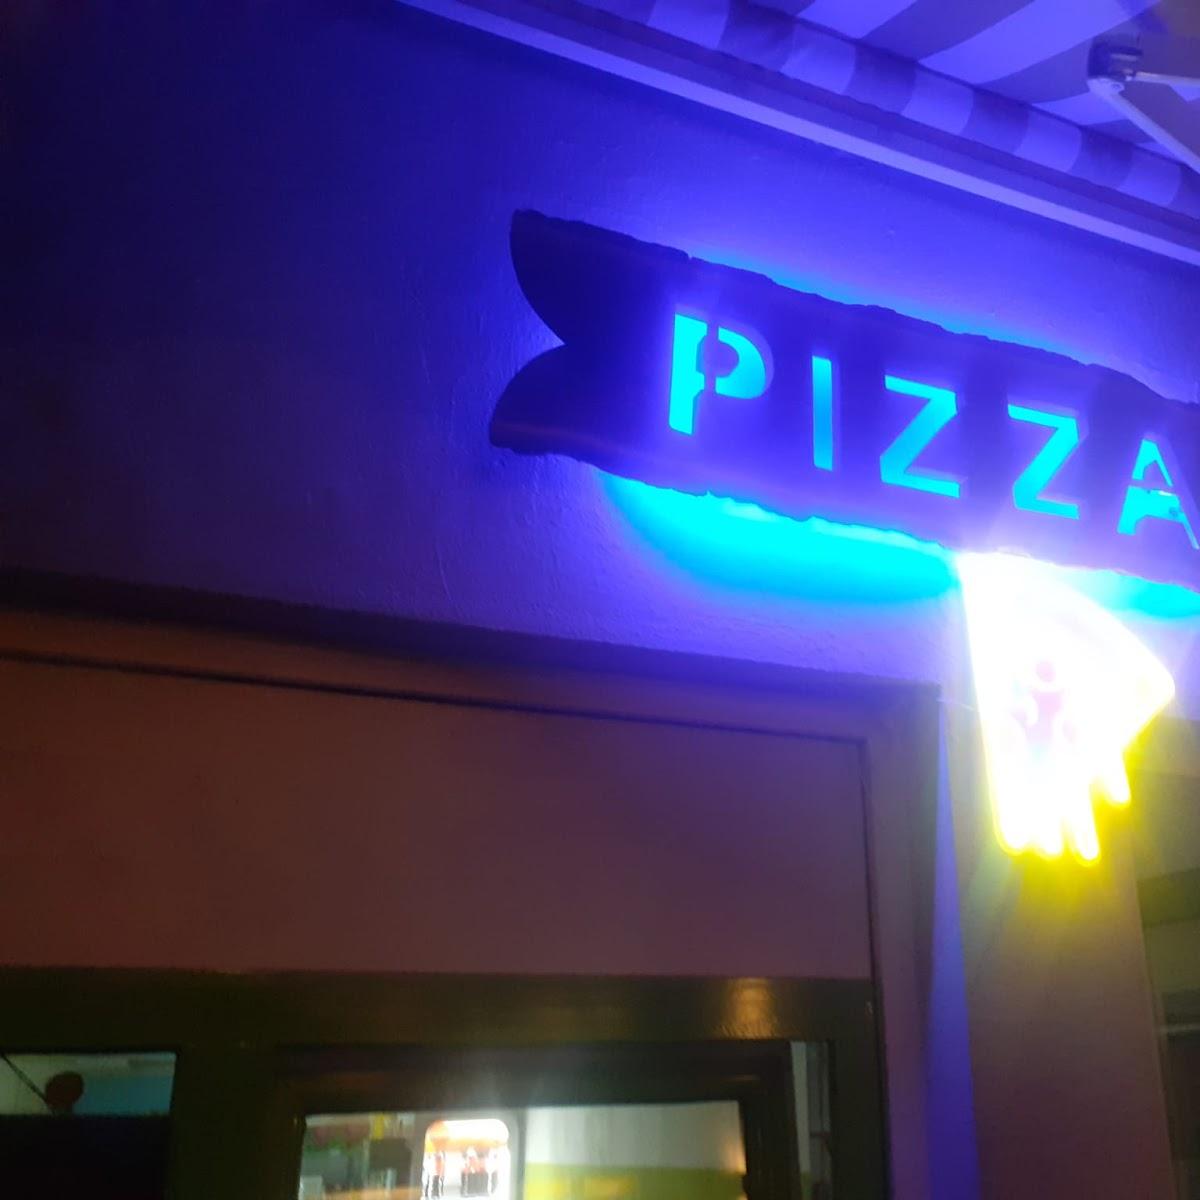 Restaurant "erlaubt Pizza |" in Regensburg